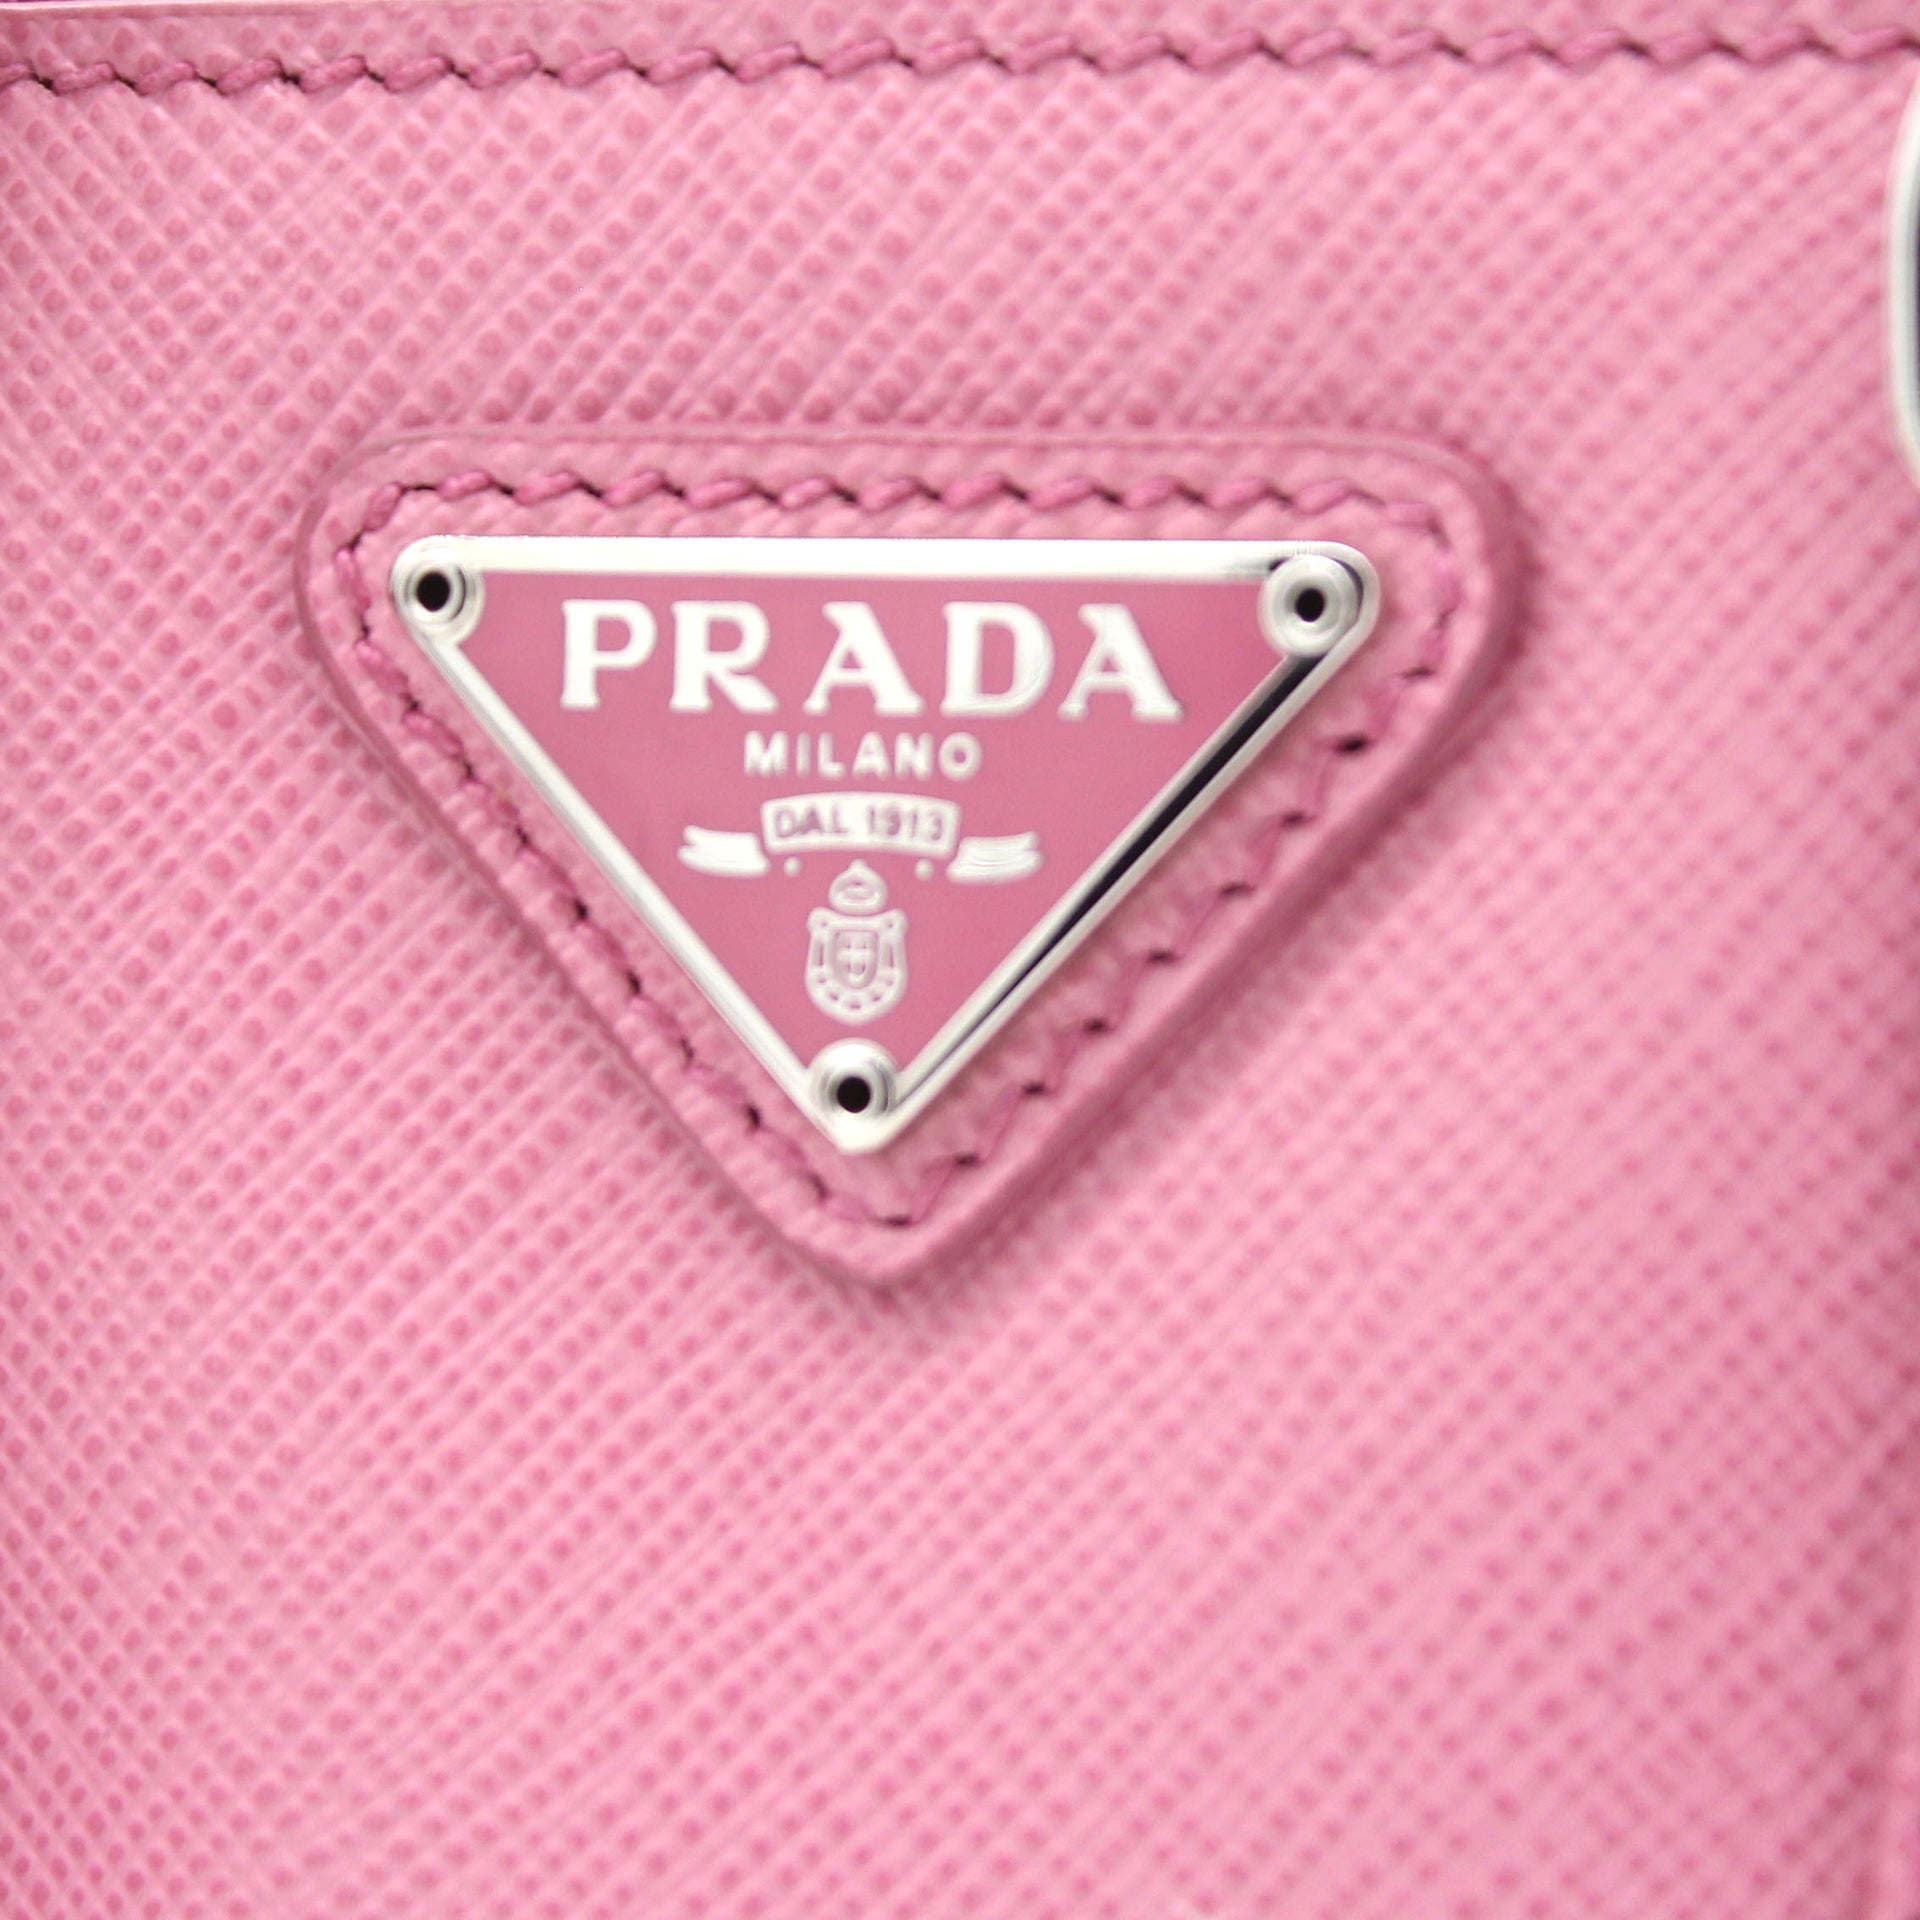 Prada Galleria Micro Bag Petal Pink